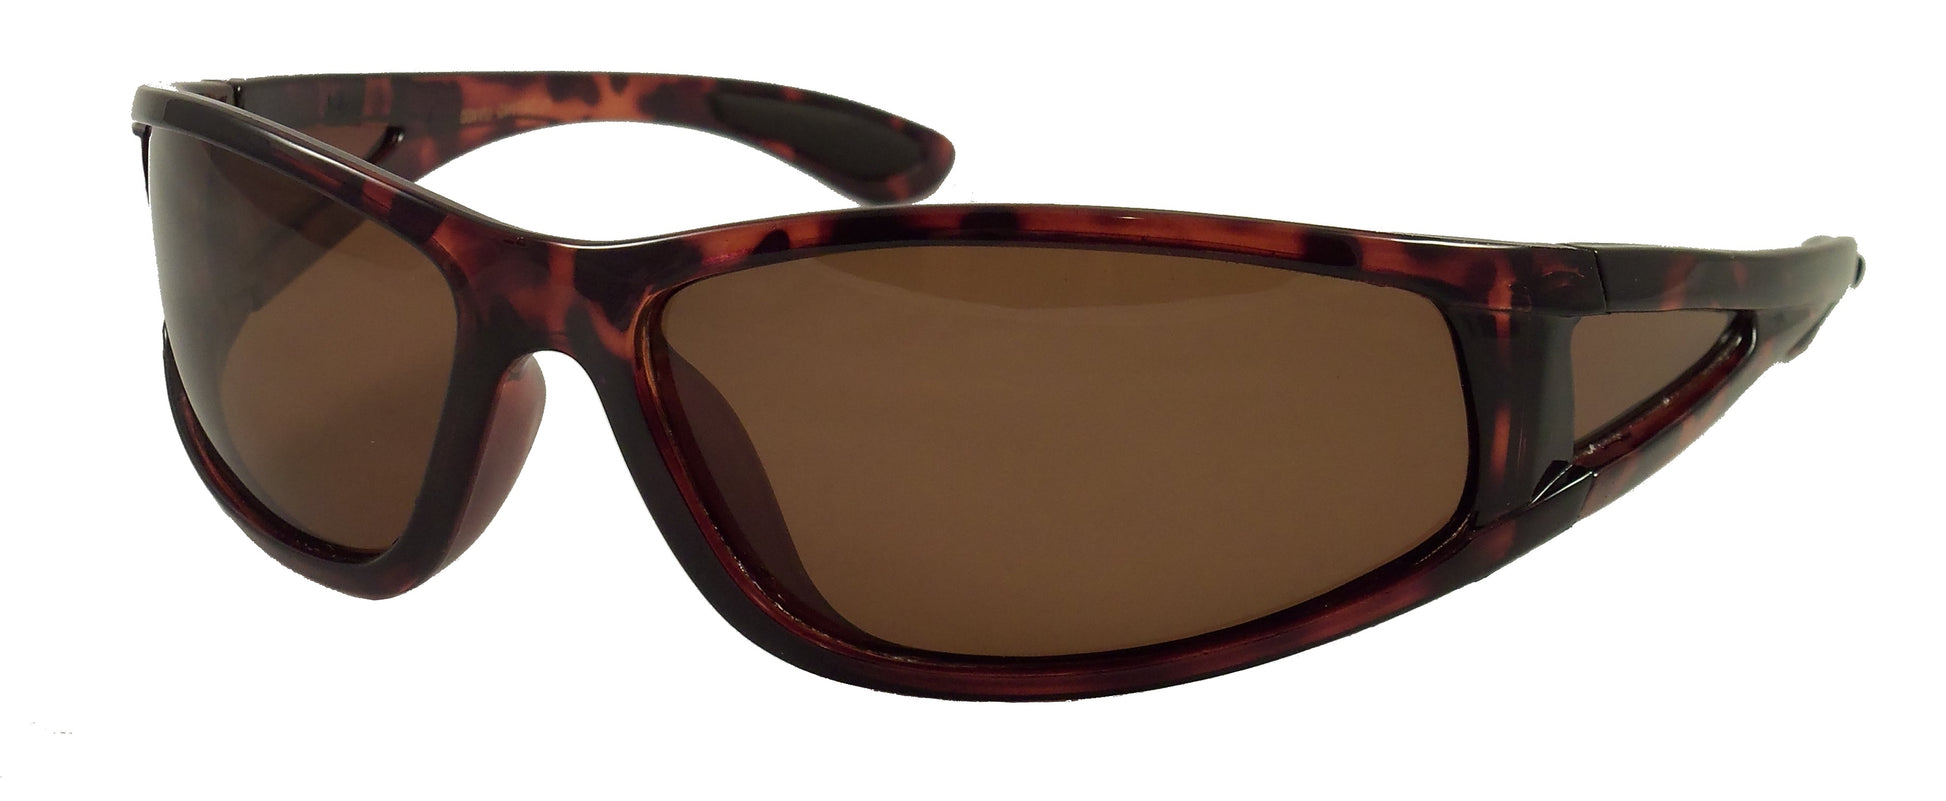 Polarized Floating Sunglasses - Fishing, Boating, Water Sports - Ideal Eyewear